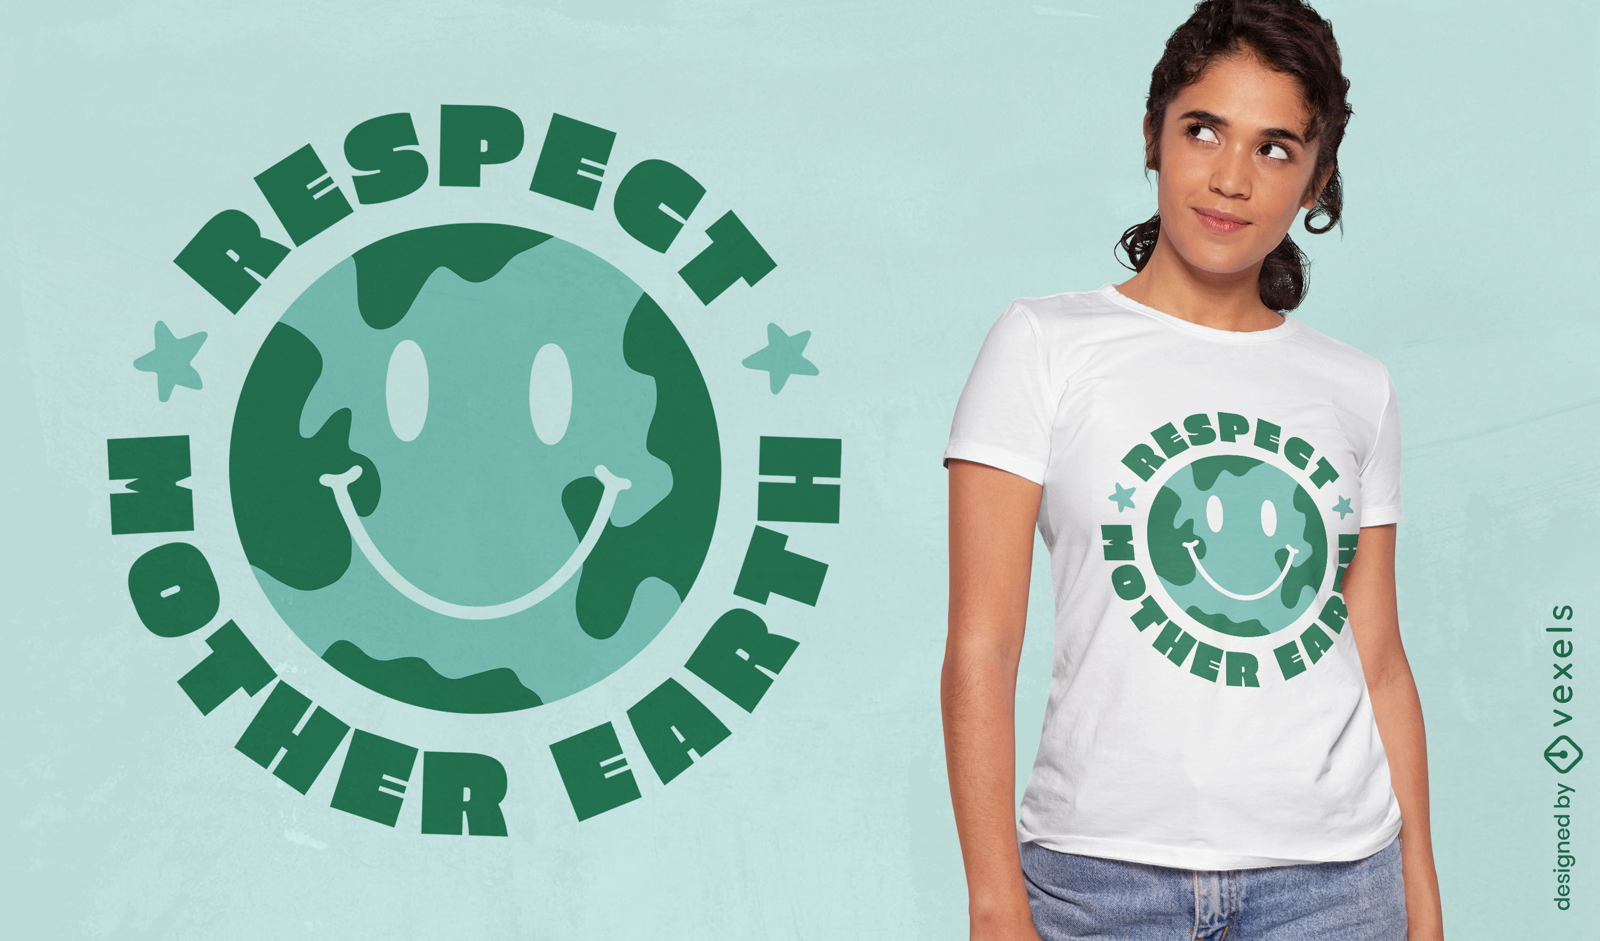 Respektieren Sie das T-Shirt-Design mit Mutter Erde-Schriftzug